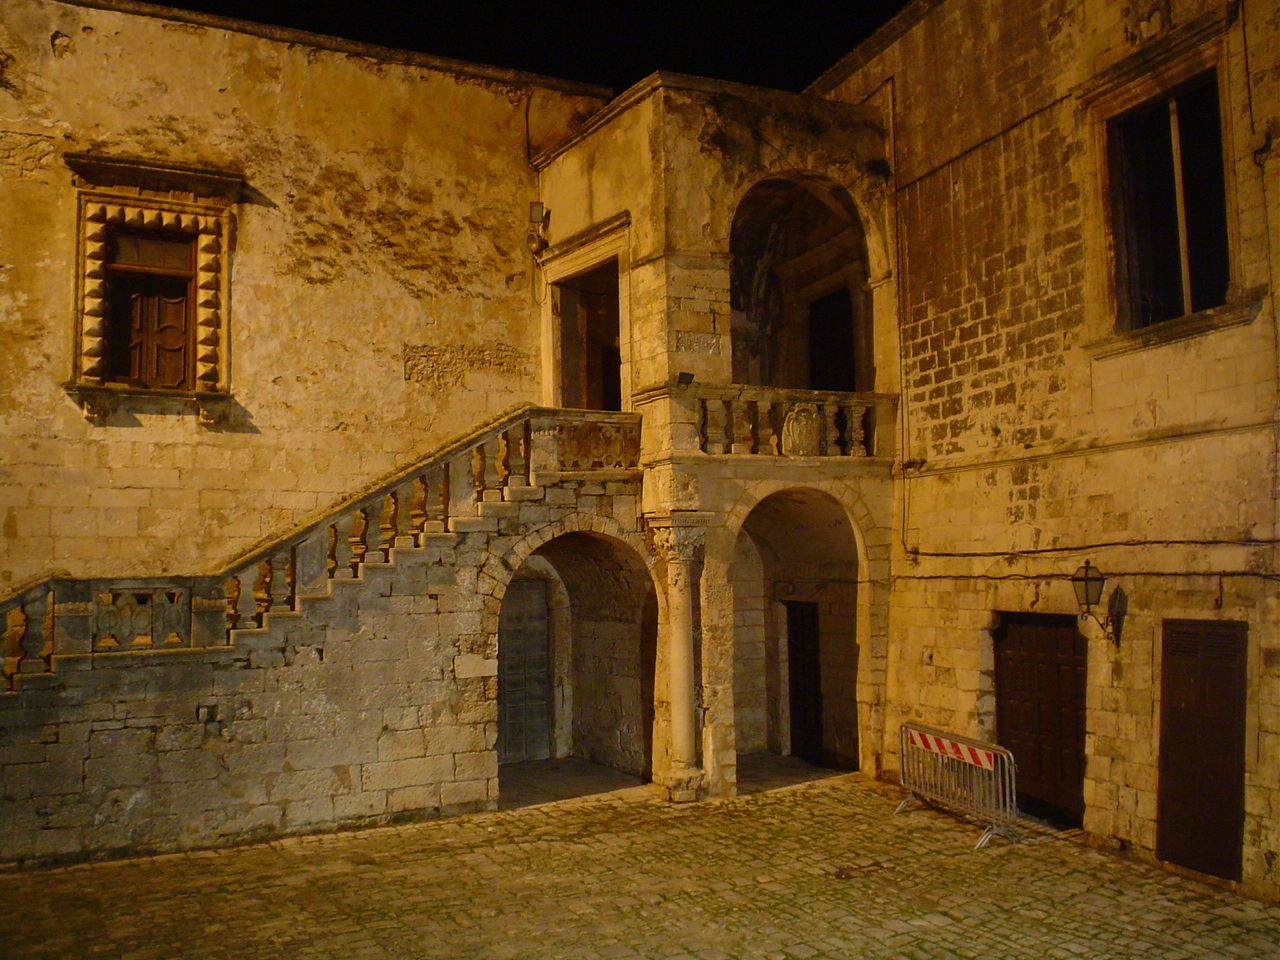 Poolo, Atrio Castello Ducale Ceglie Messapica, 2006, fotografia digitale